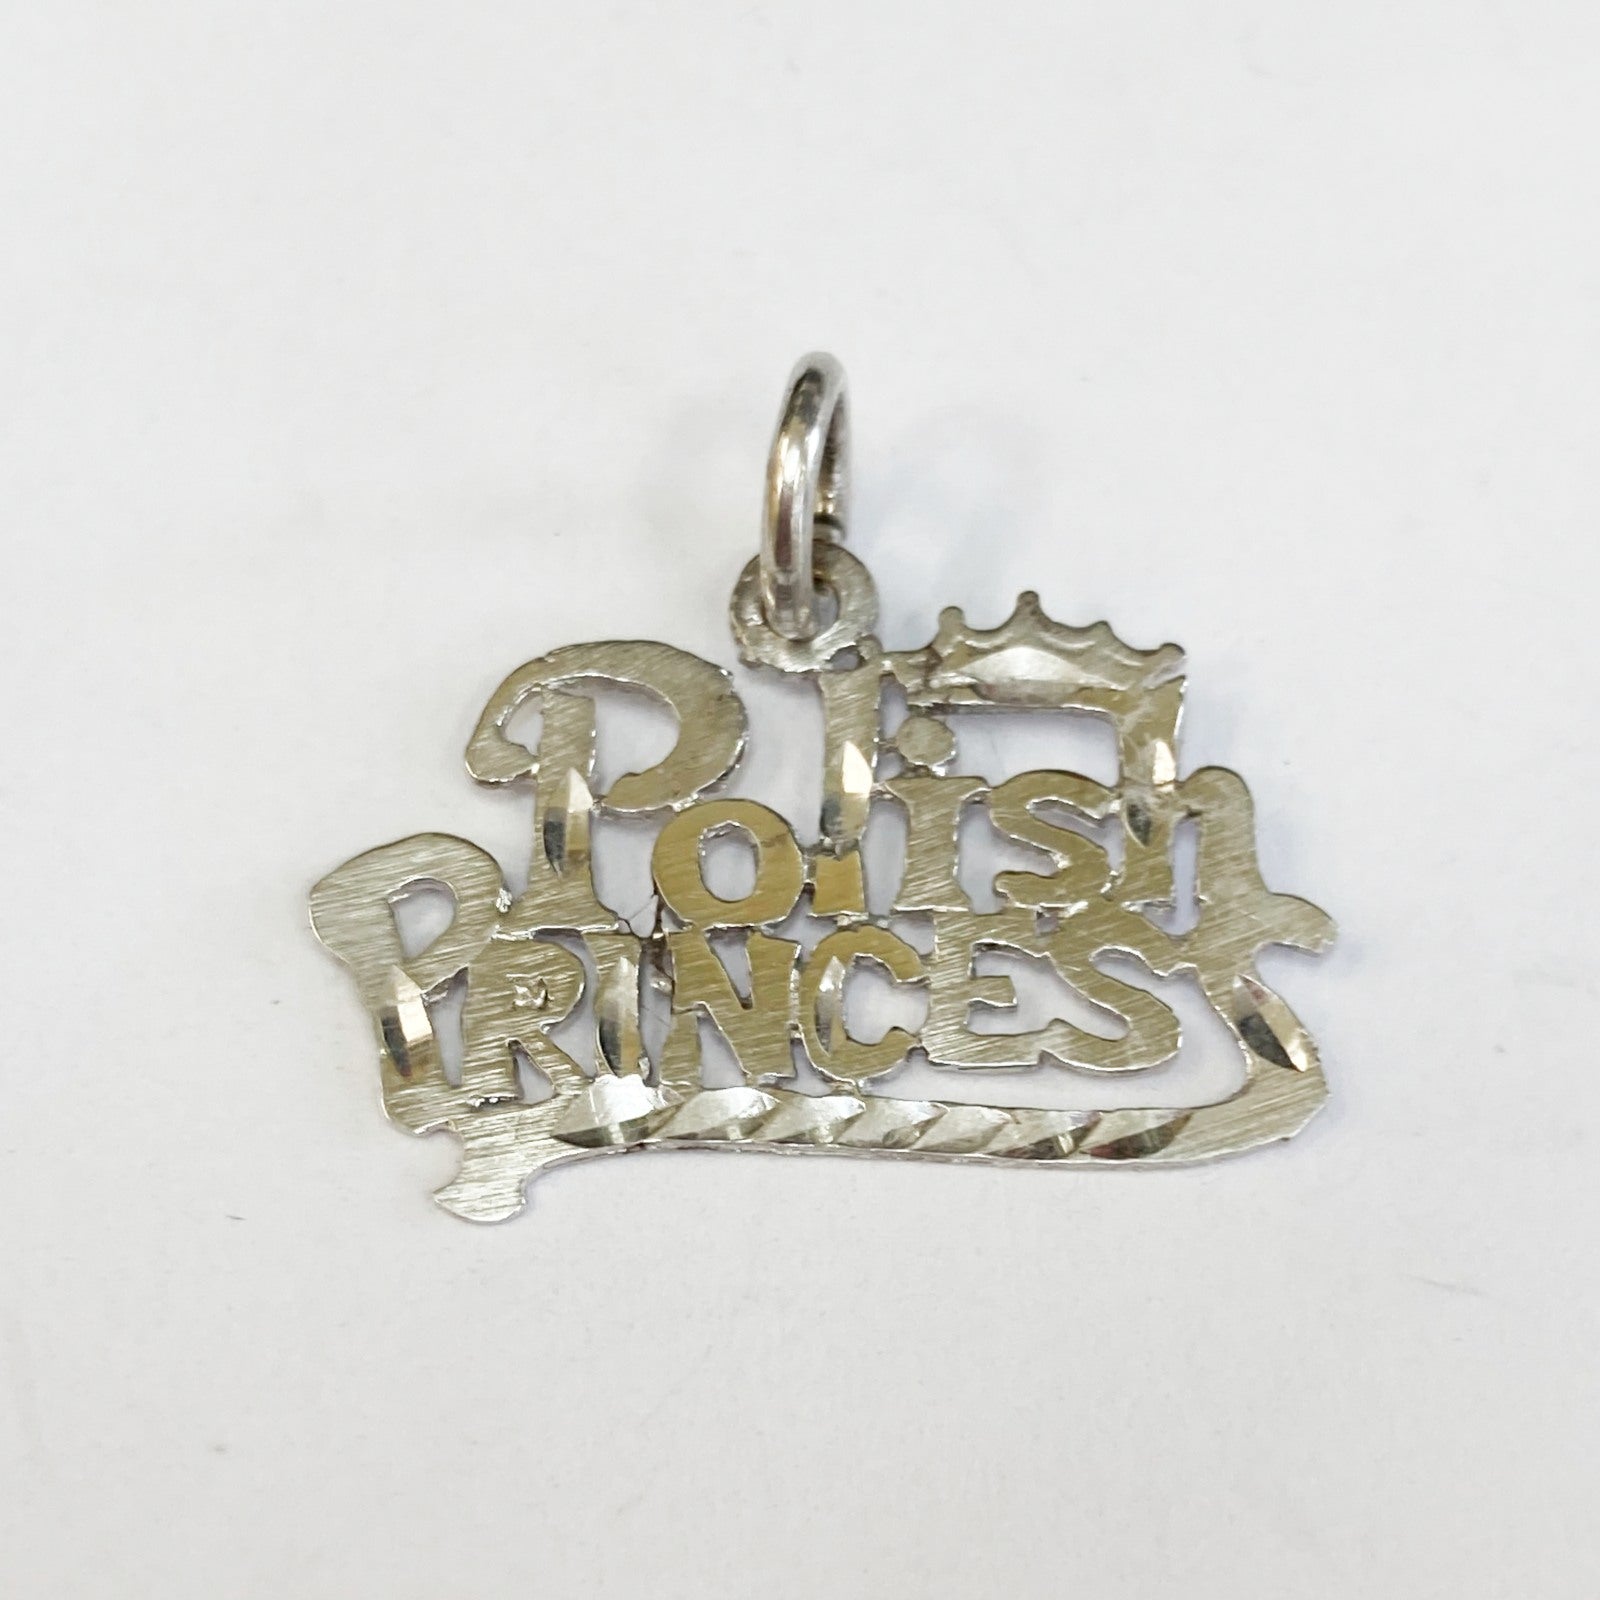 14k "POLISH" Princess Charm